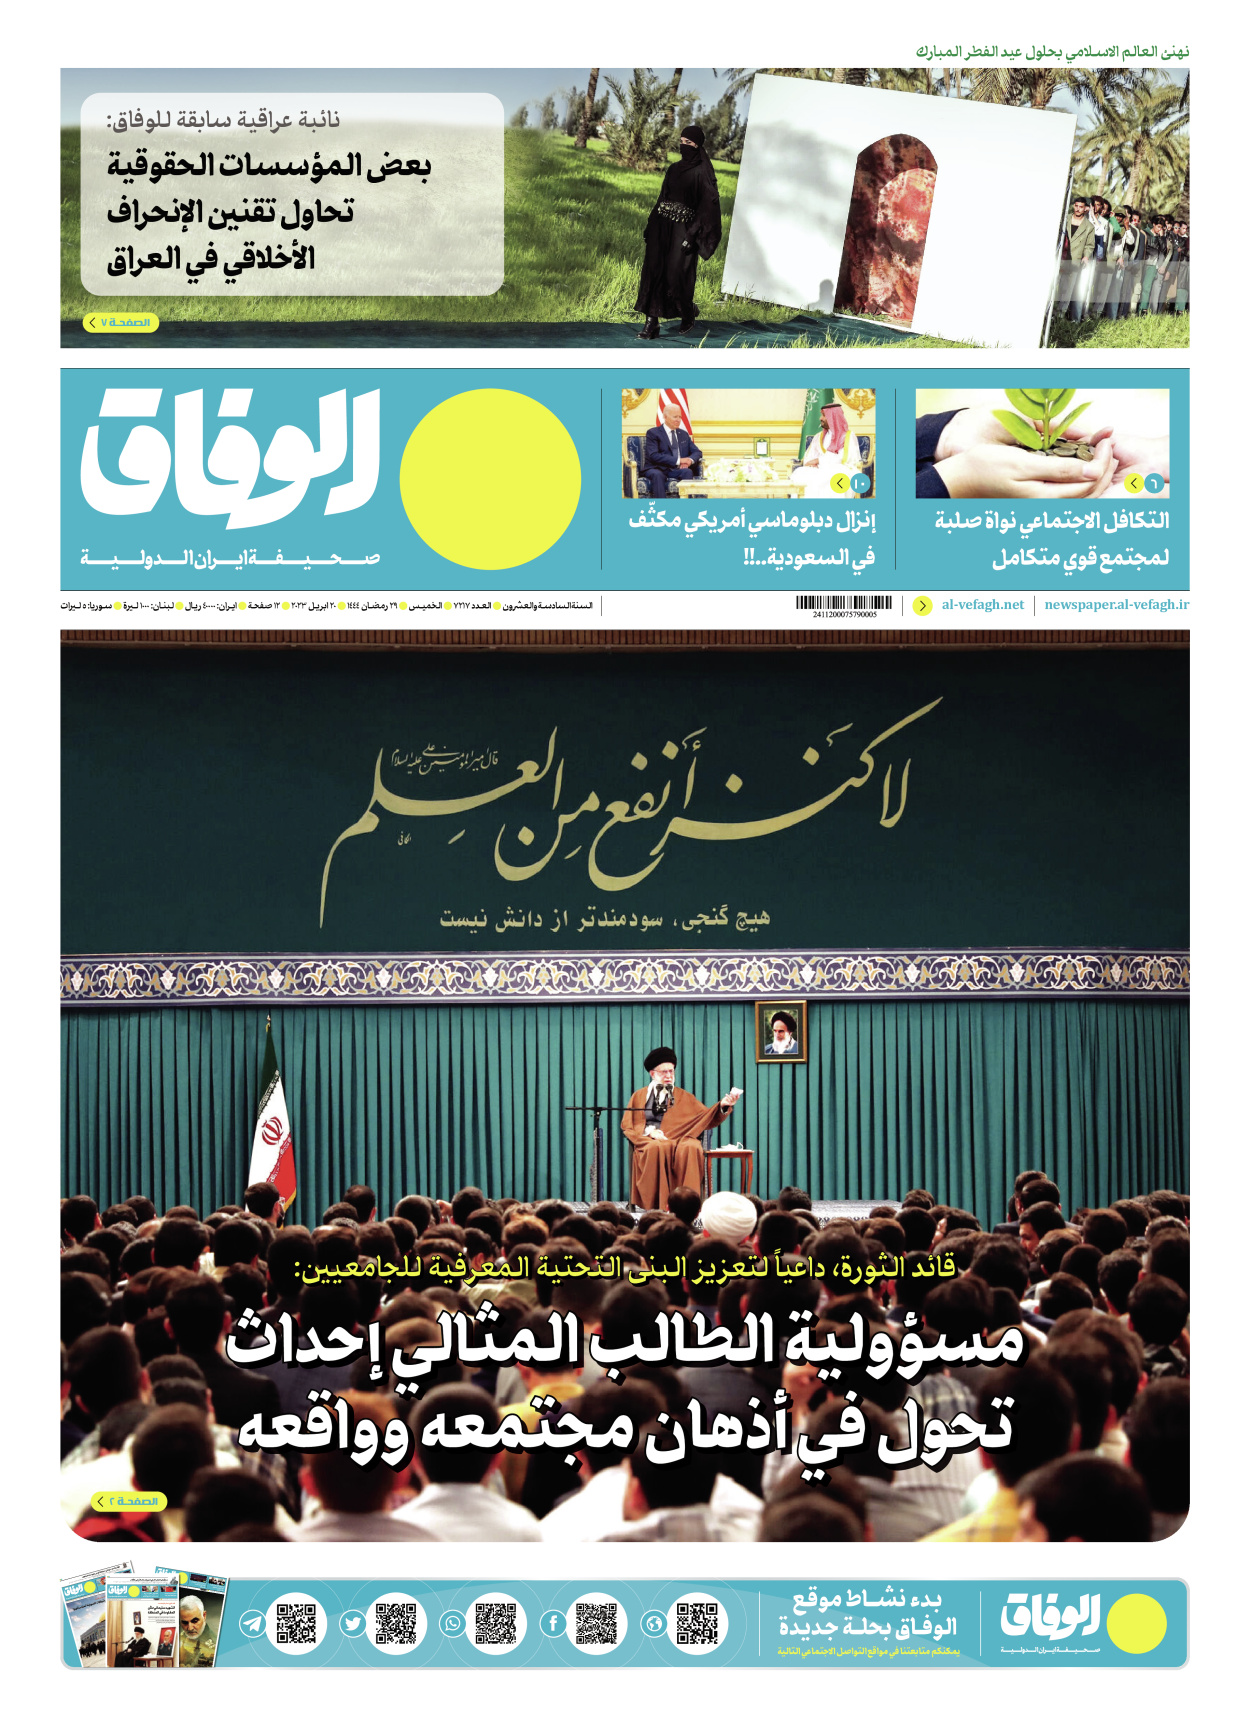 صحیفة ایران الدولیة الوفاق - العدد سبعة آلاف ومائتان وسبعة عشر - ٢٠ أبريل ٢٠٢٣ - الصفحة ۱